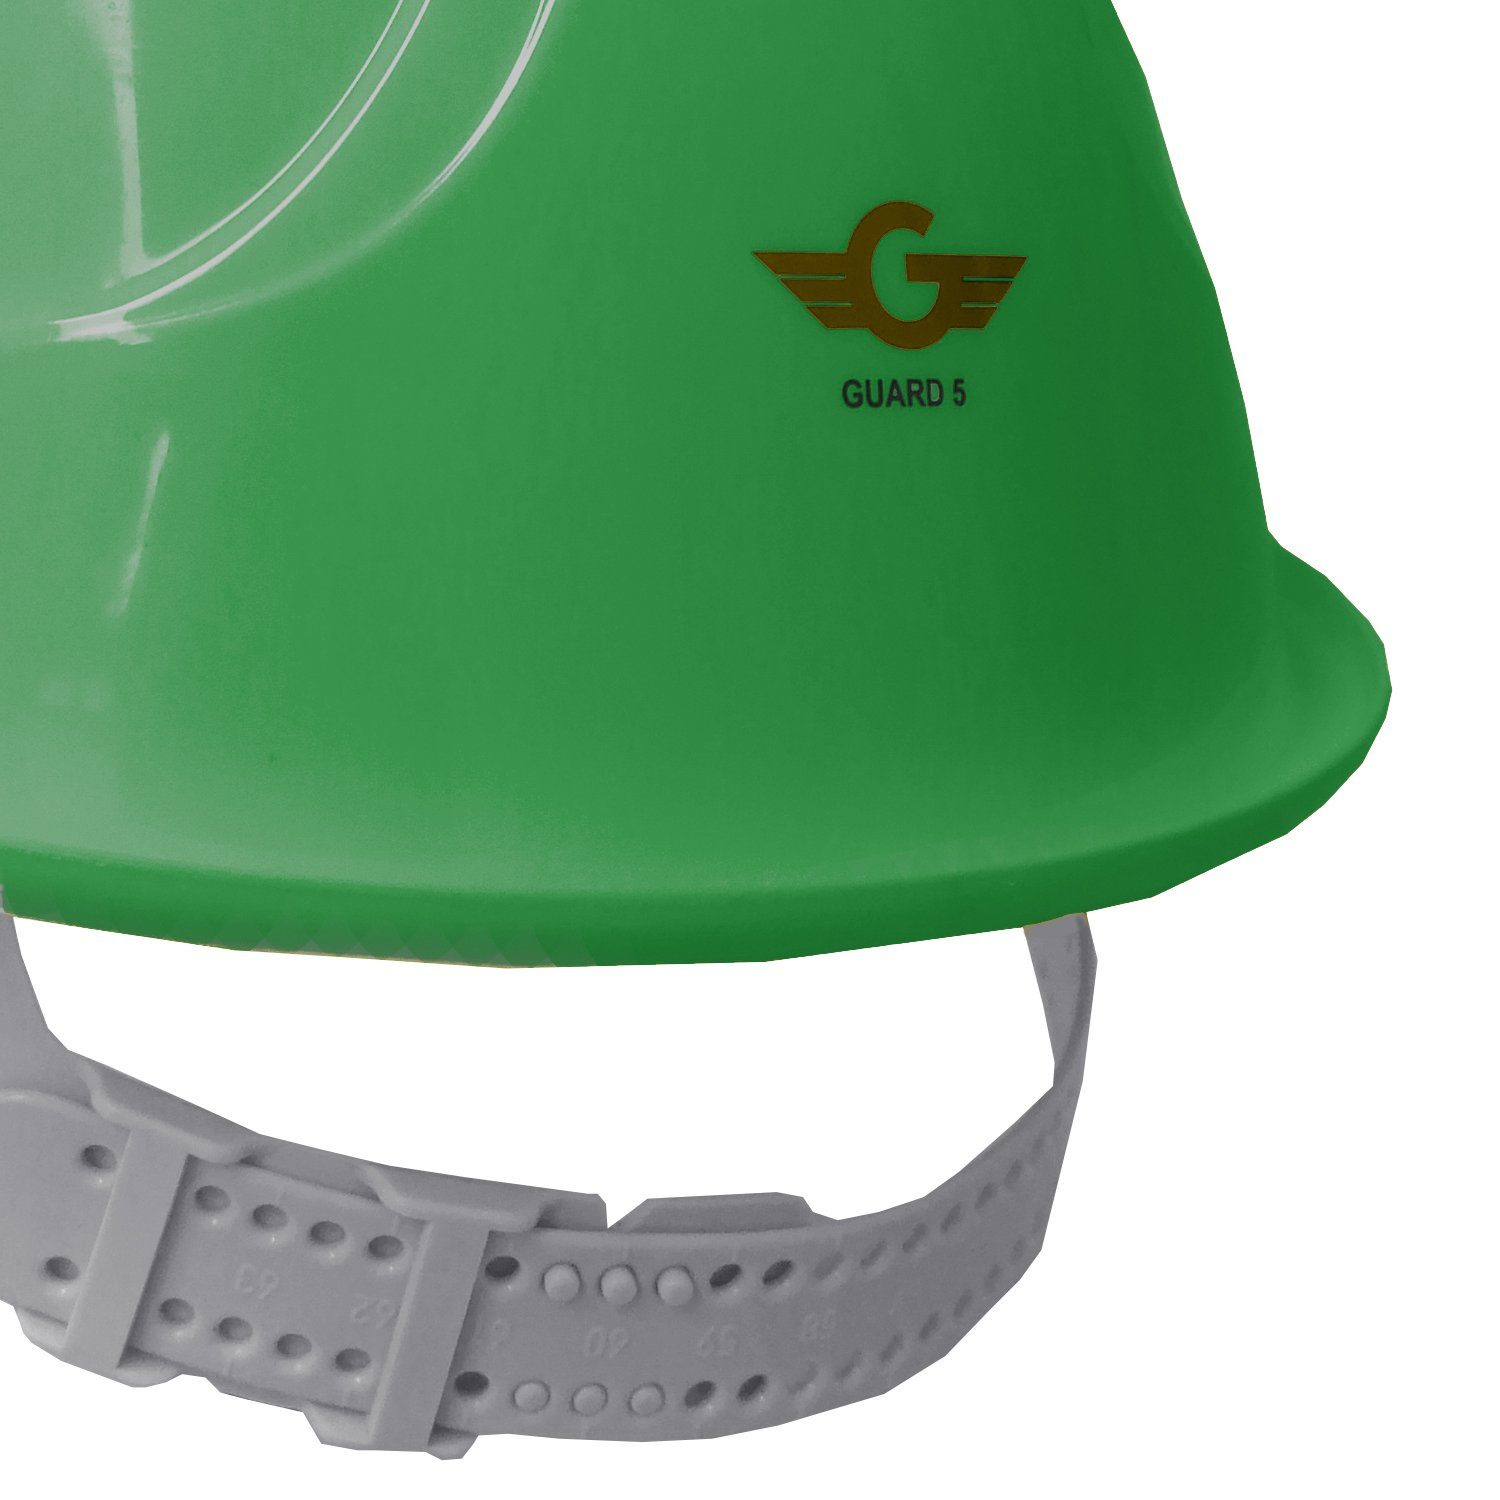 GUARD 5 - (Art.22-80BR) Arbeitshelm 6-Punkt-Gurtband mit BAU-Helm Schutzhelm - grün